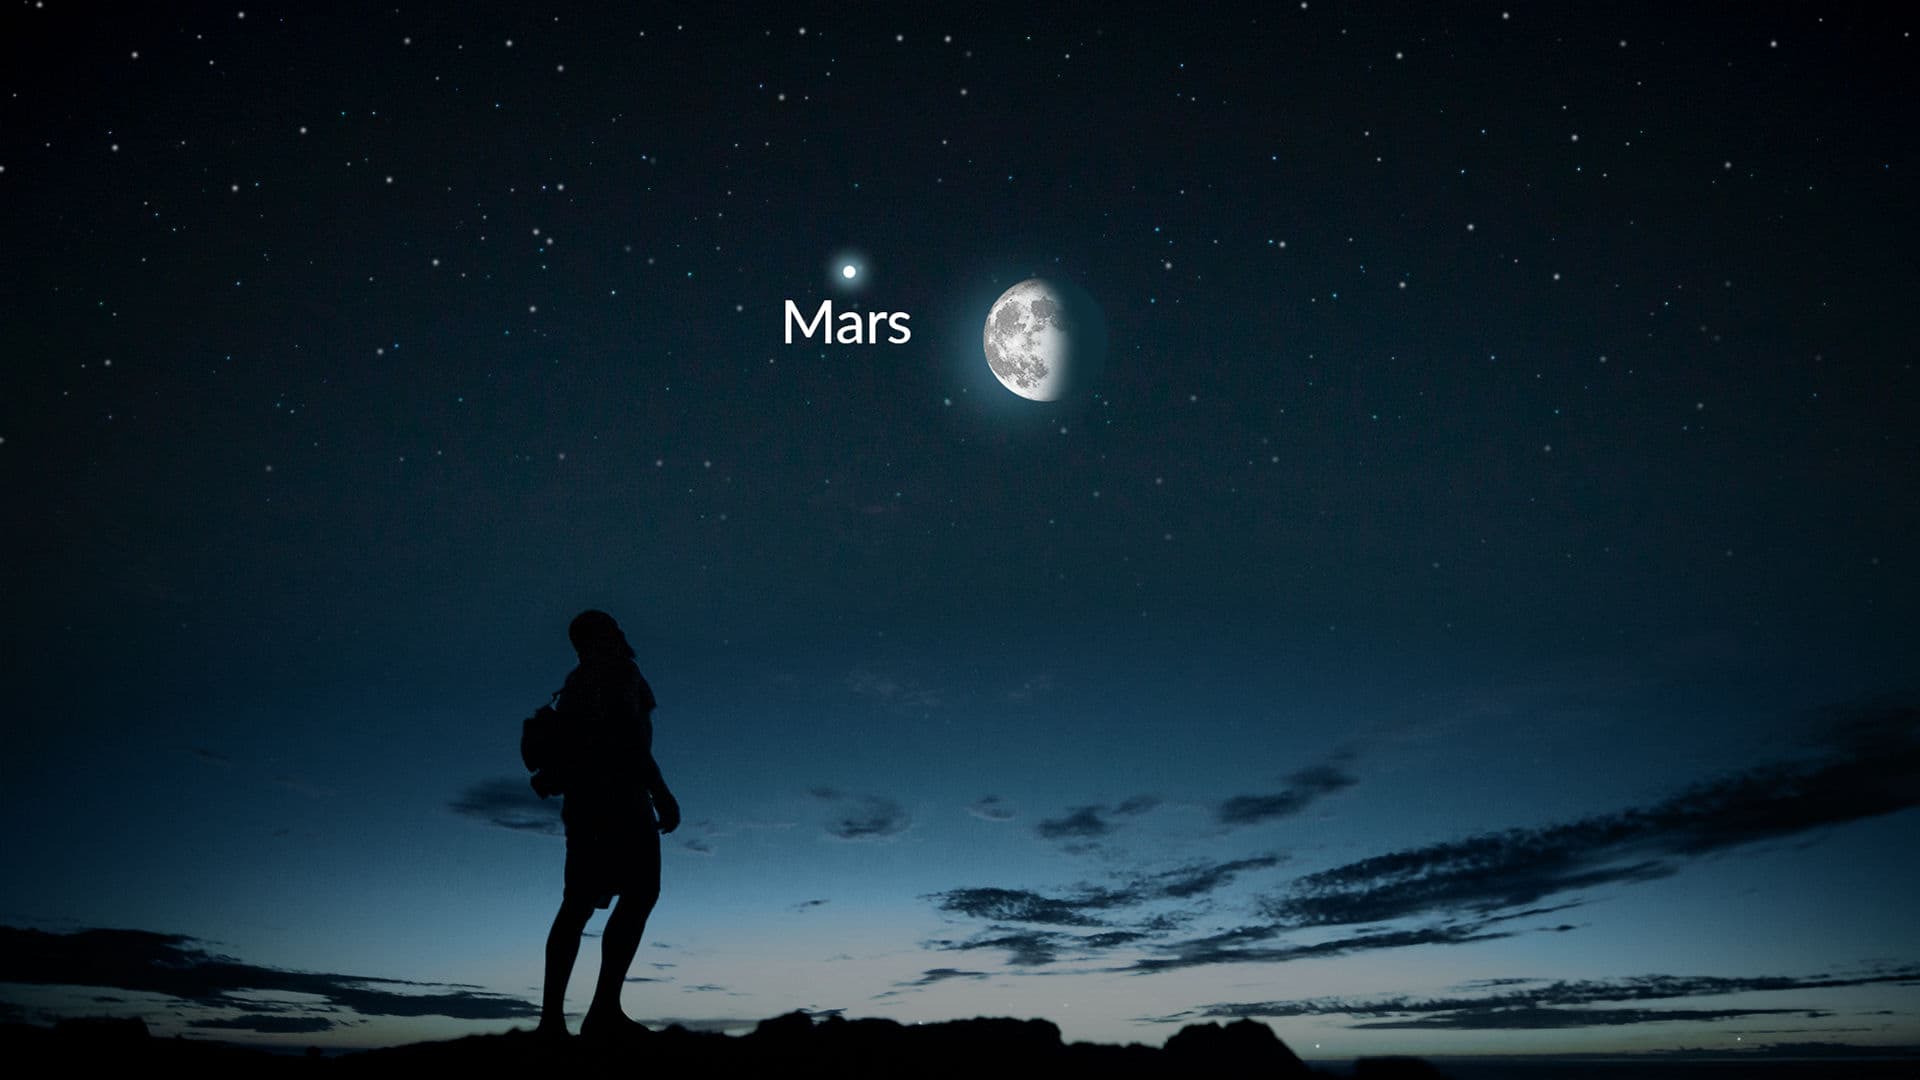 Lua e Marte, do crepúsculo ao amanhecer (e ainda mais)